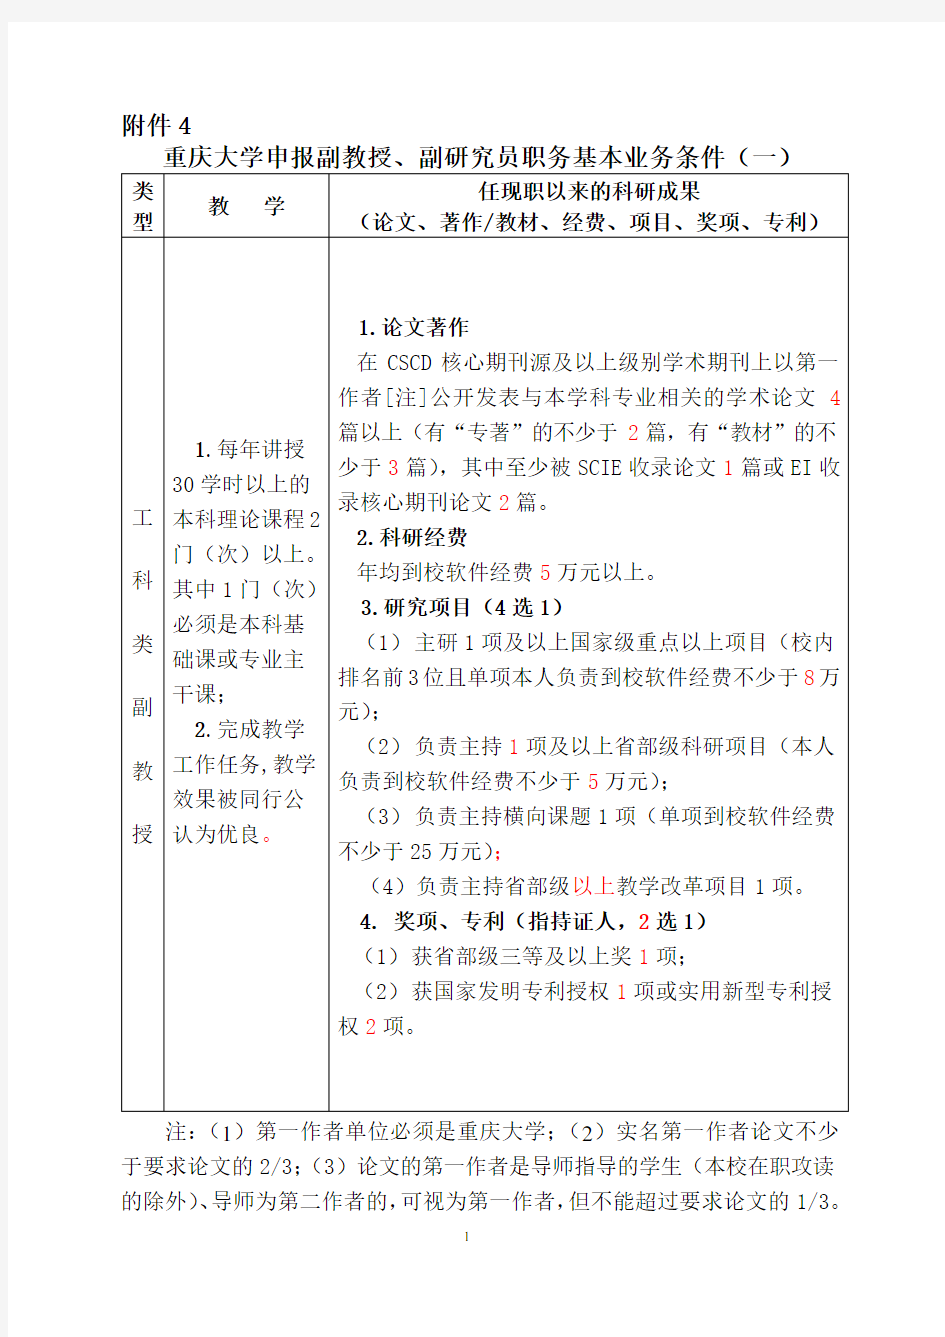 4.重庆大学申报副教授、副研究员职务基本业务条件